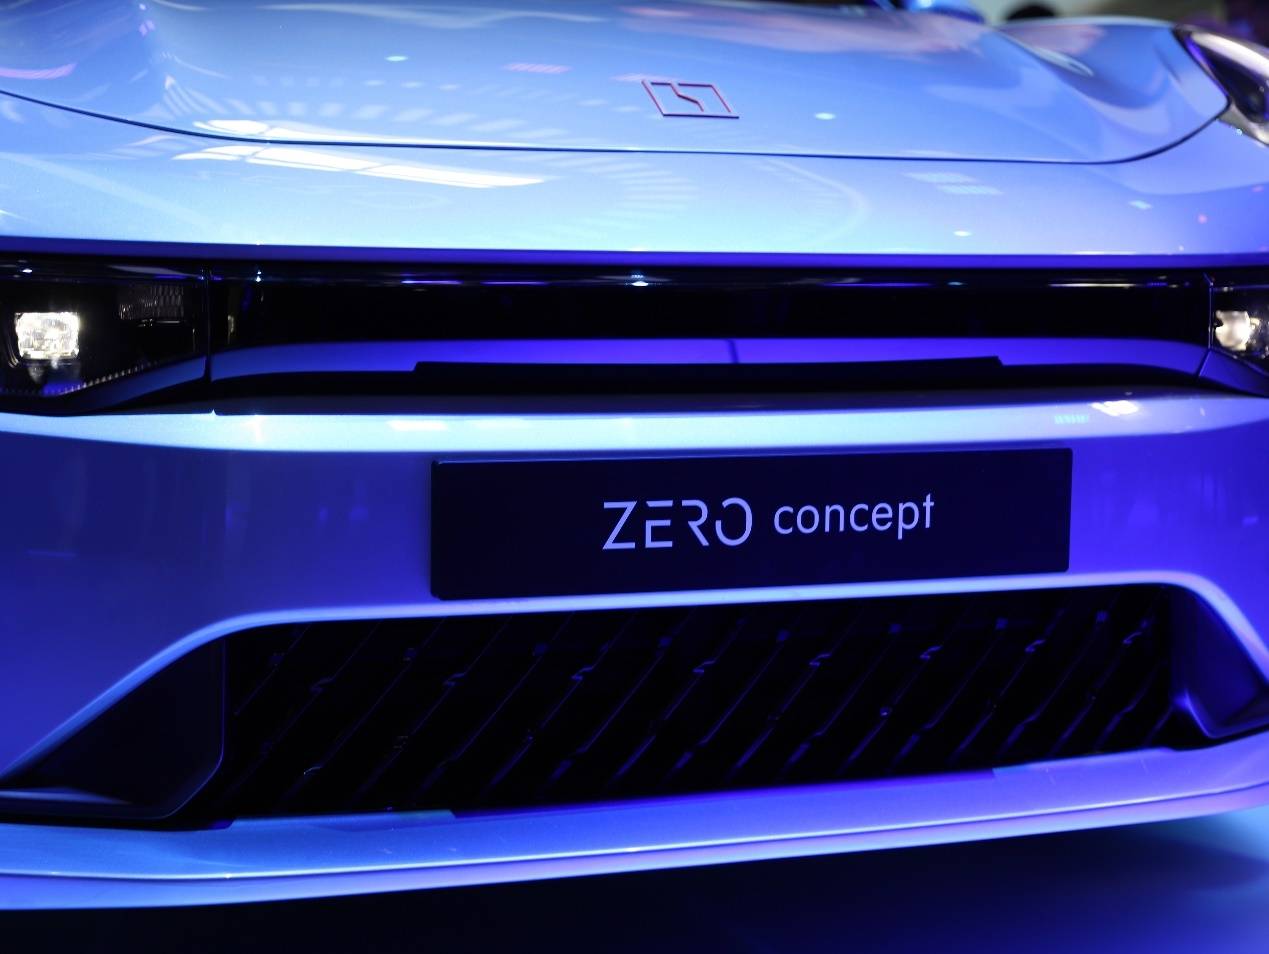 2020北京国际车展 | 领克发布旗下首款电动车:zero concept